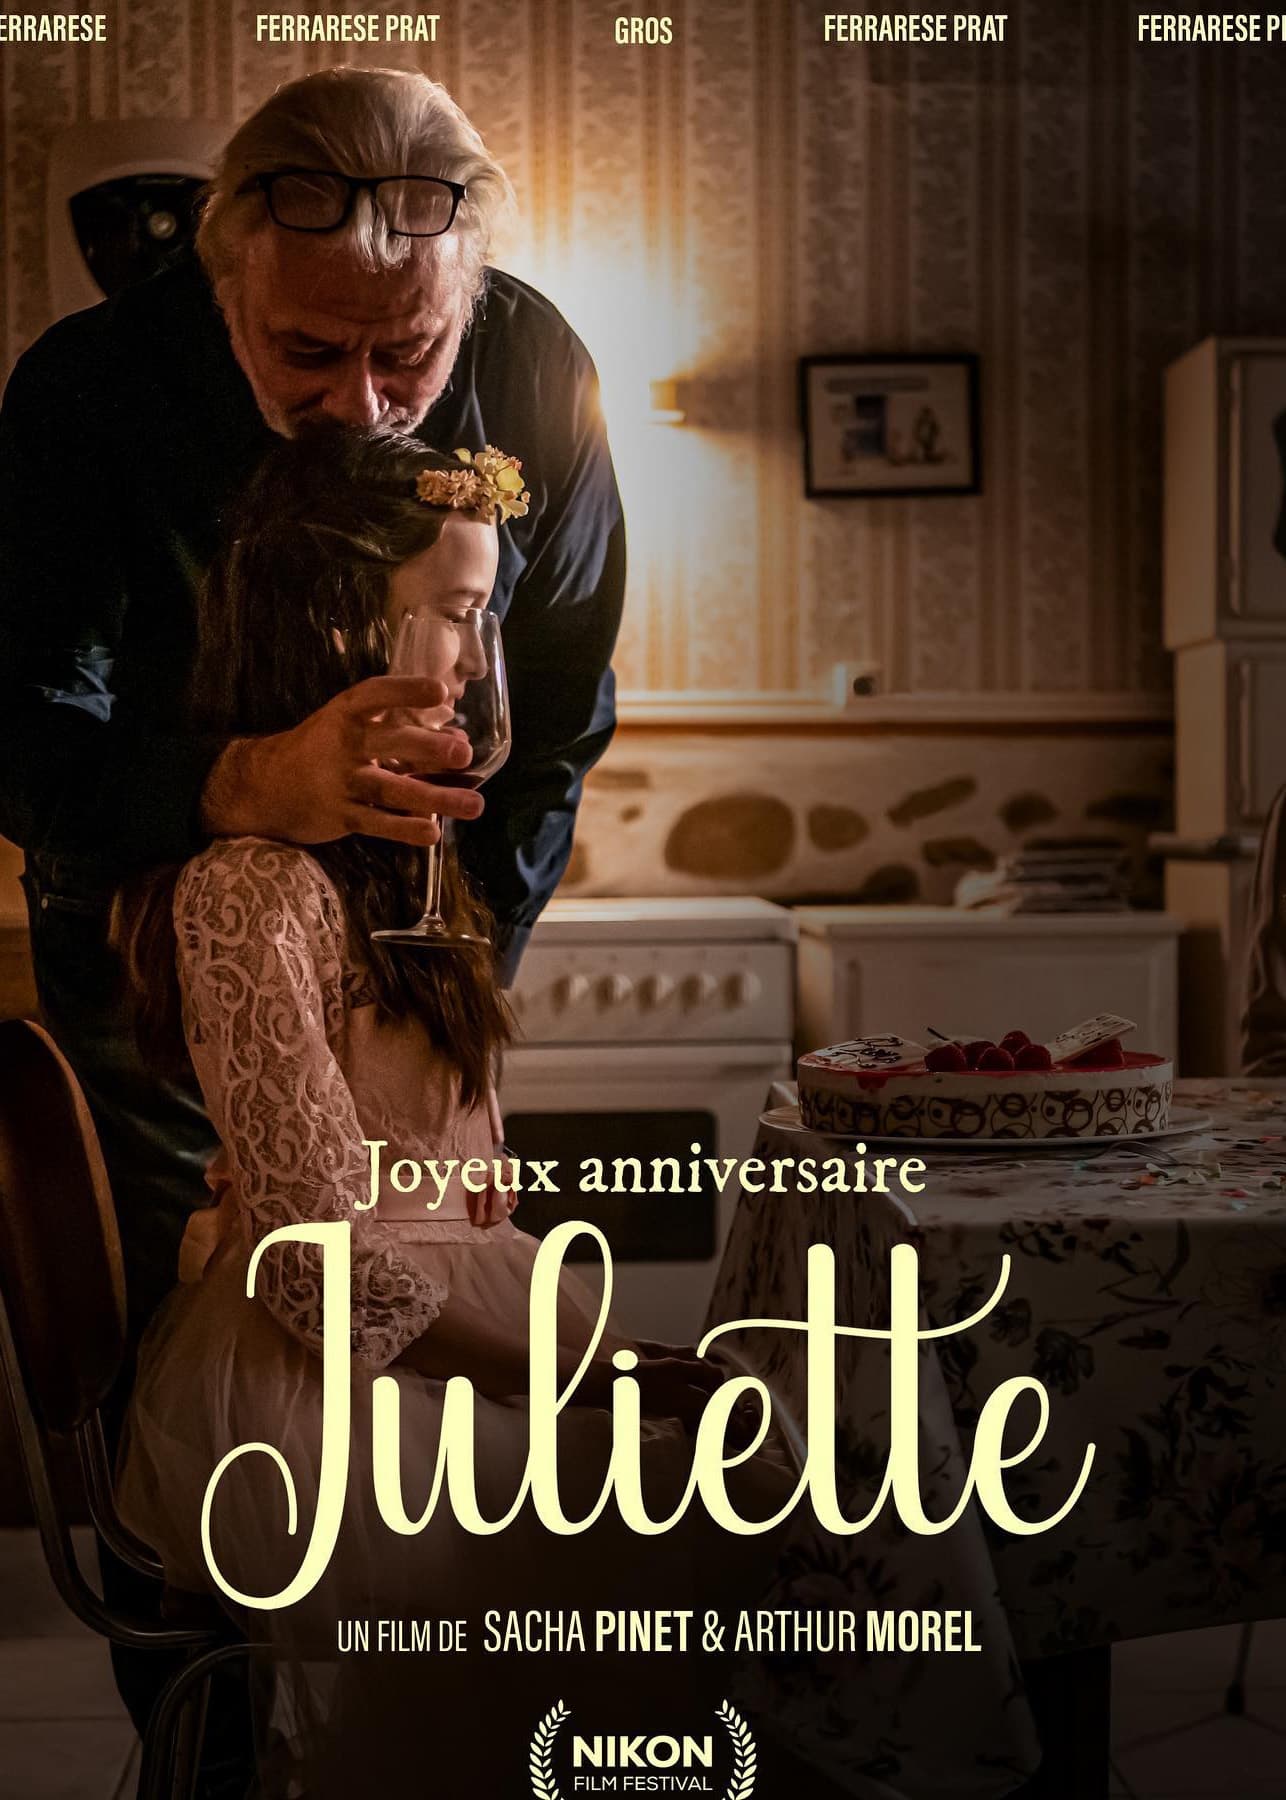 Joyeux anniversaire Juliette